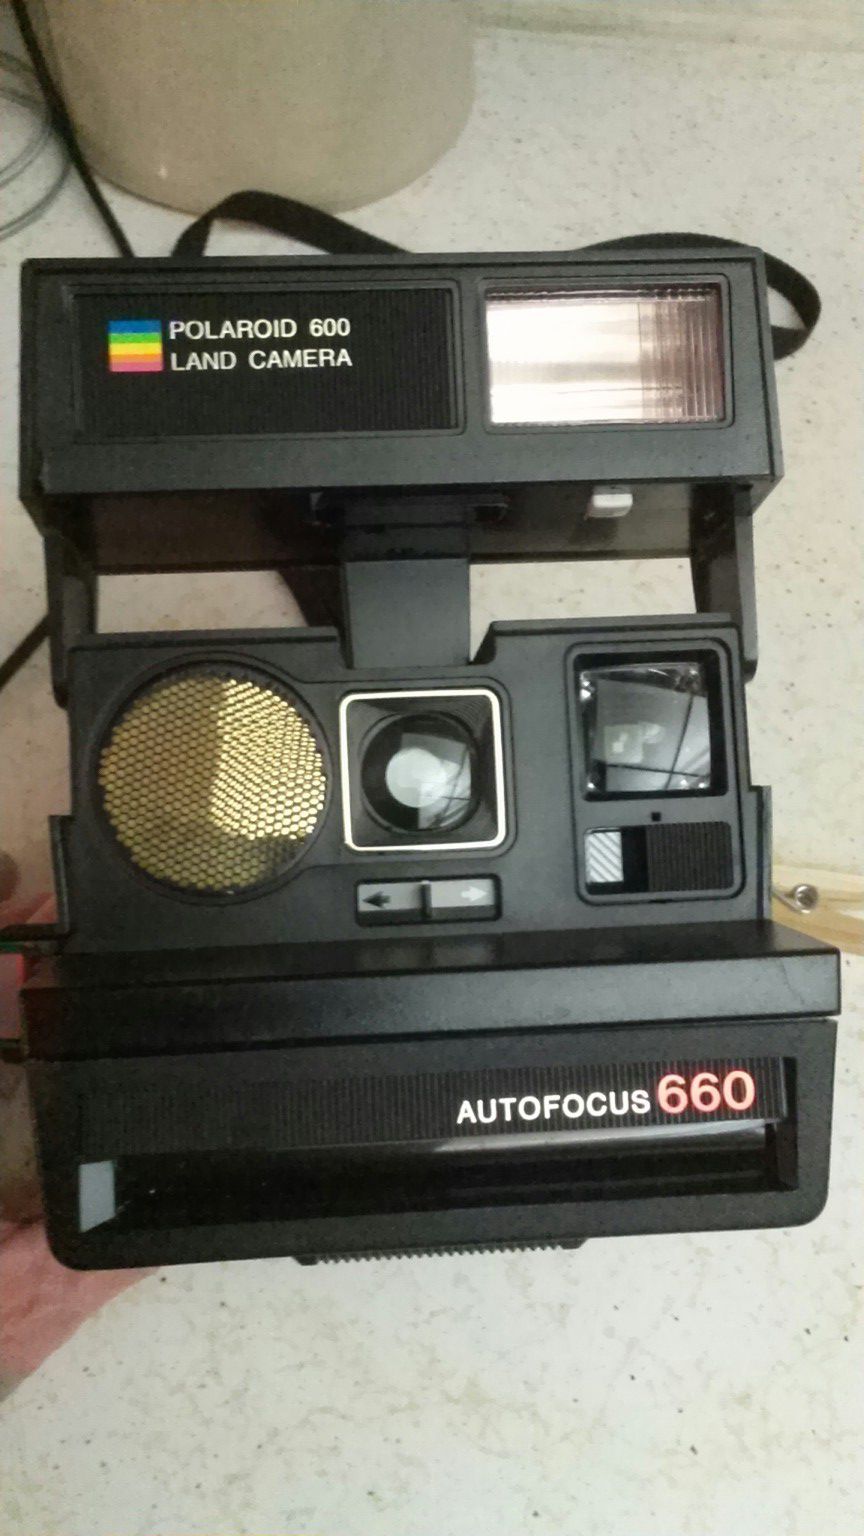 Polaroid camera Auto Focus 660